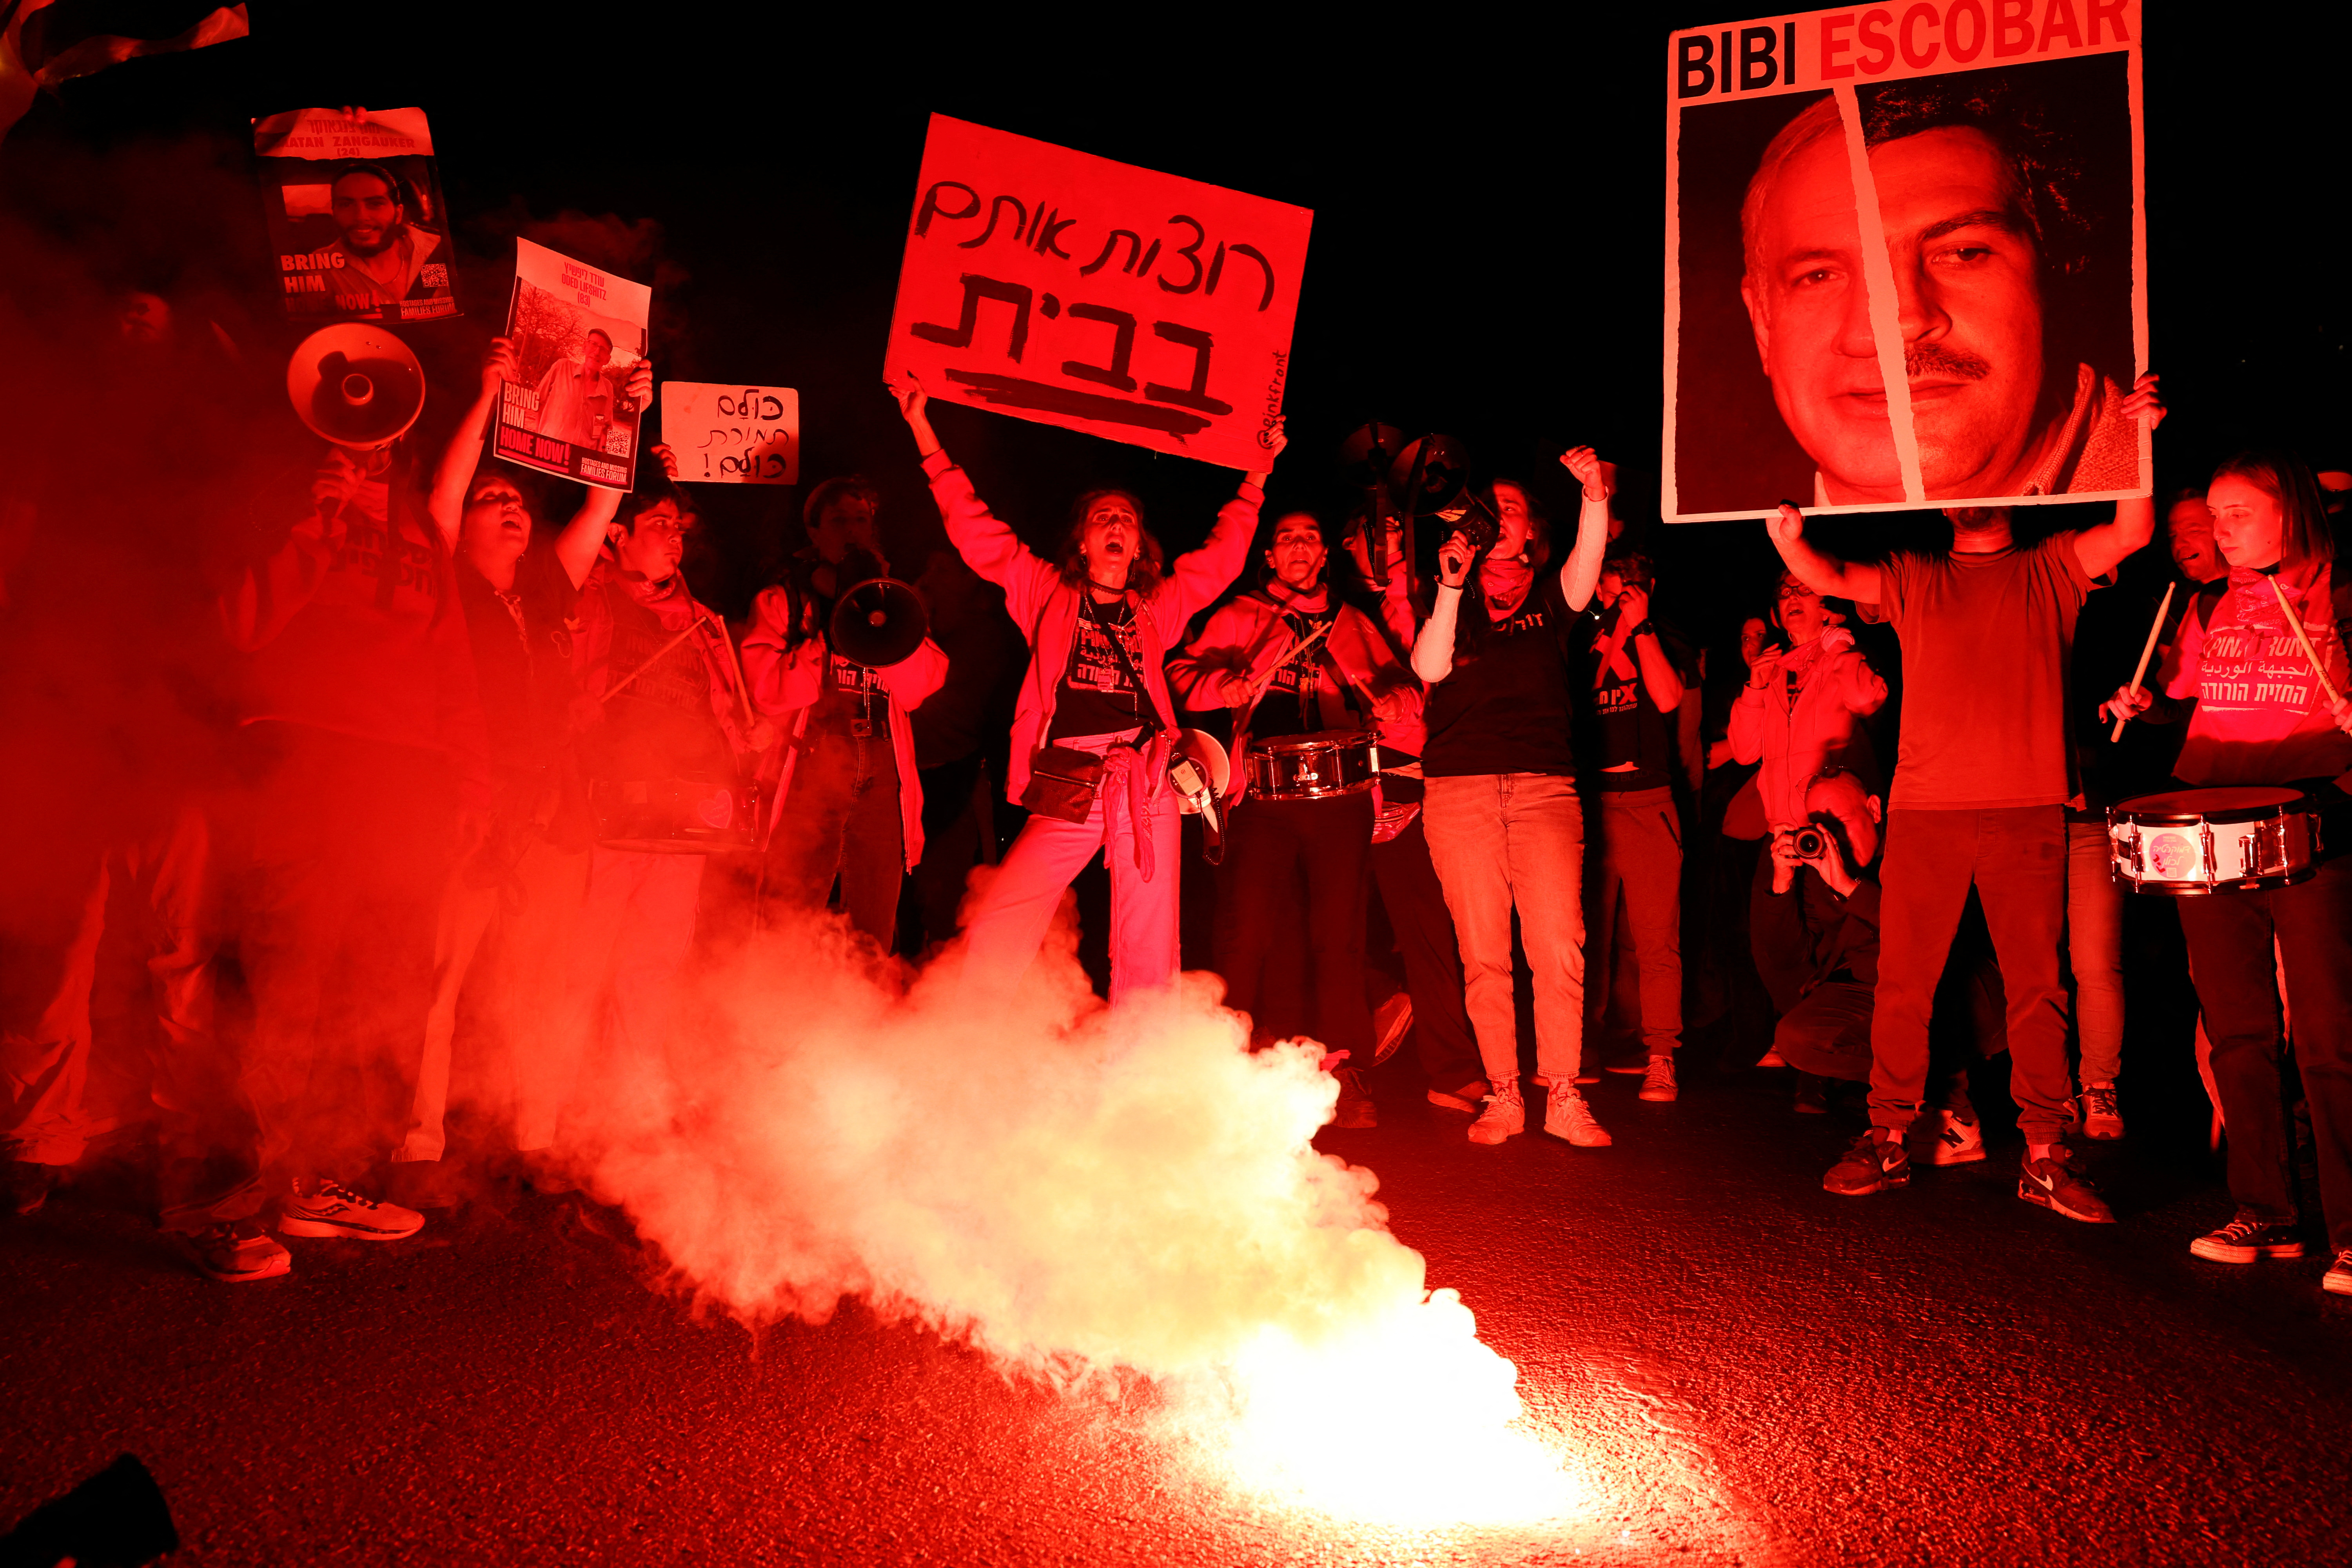 Israelis stehen während einer Protestaktion gegen den israelischen Premierminister am 23. März neben einem Lagerfeuer